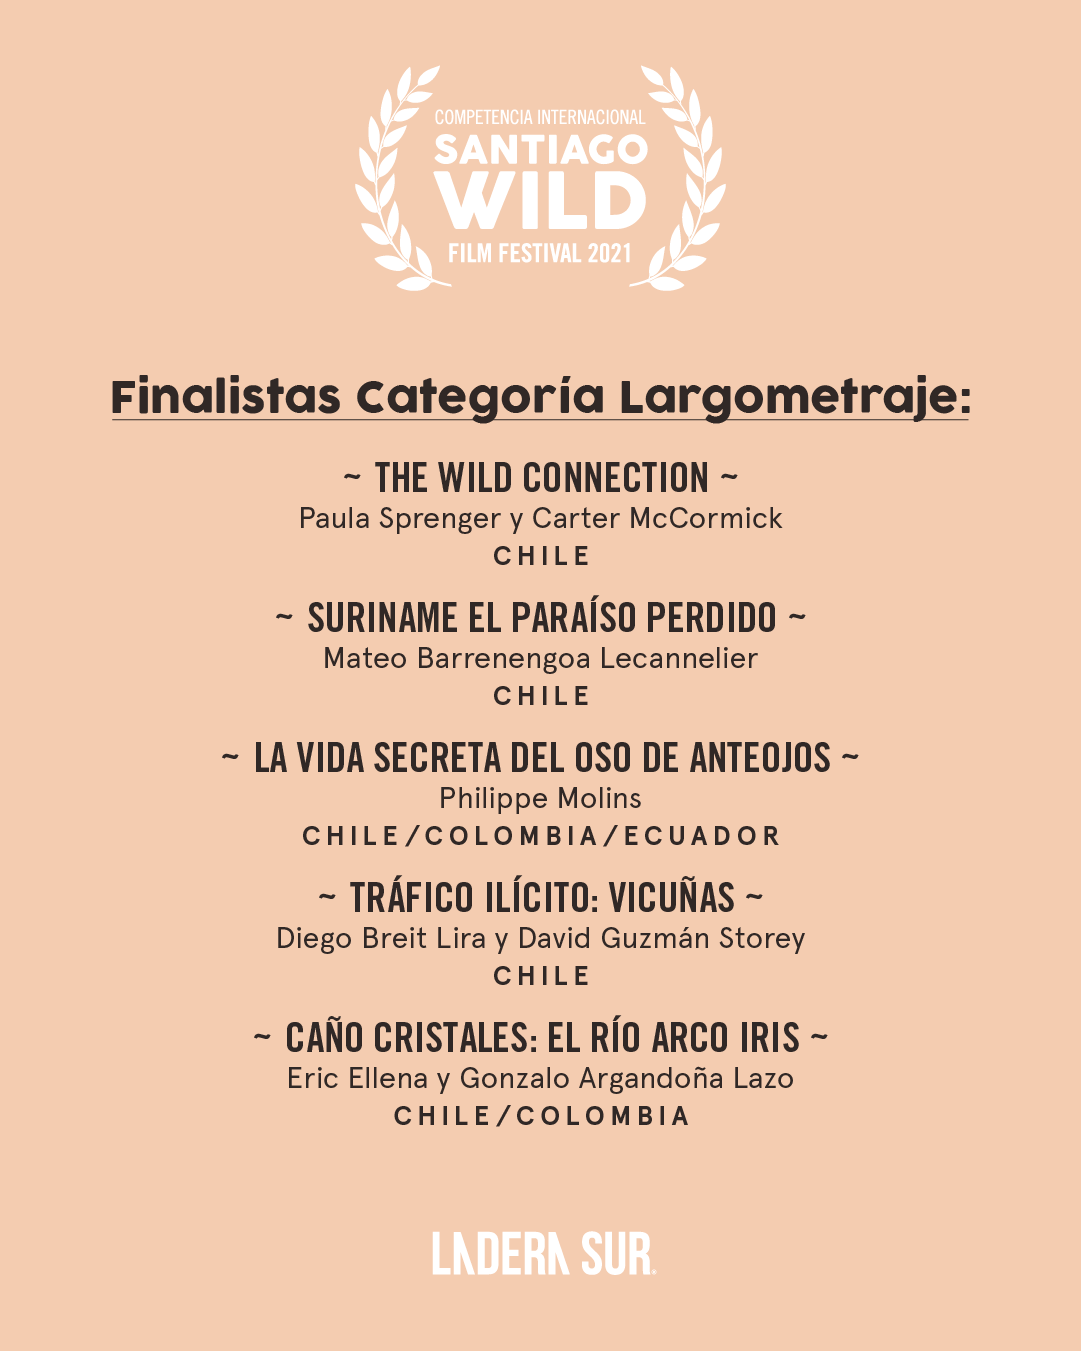 Finalistas Santiago Wild 2021